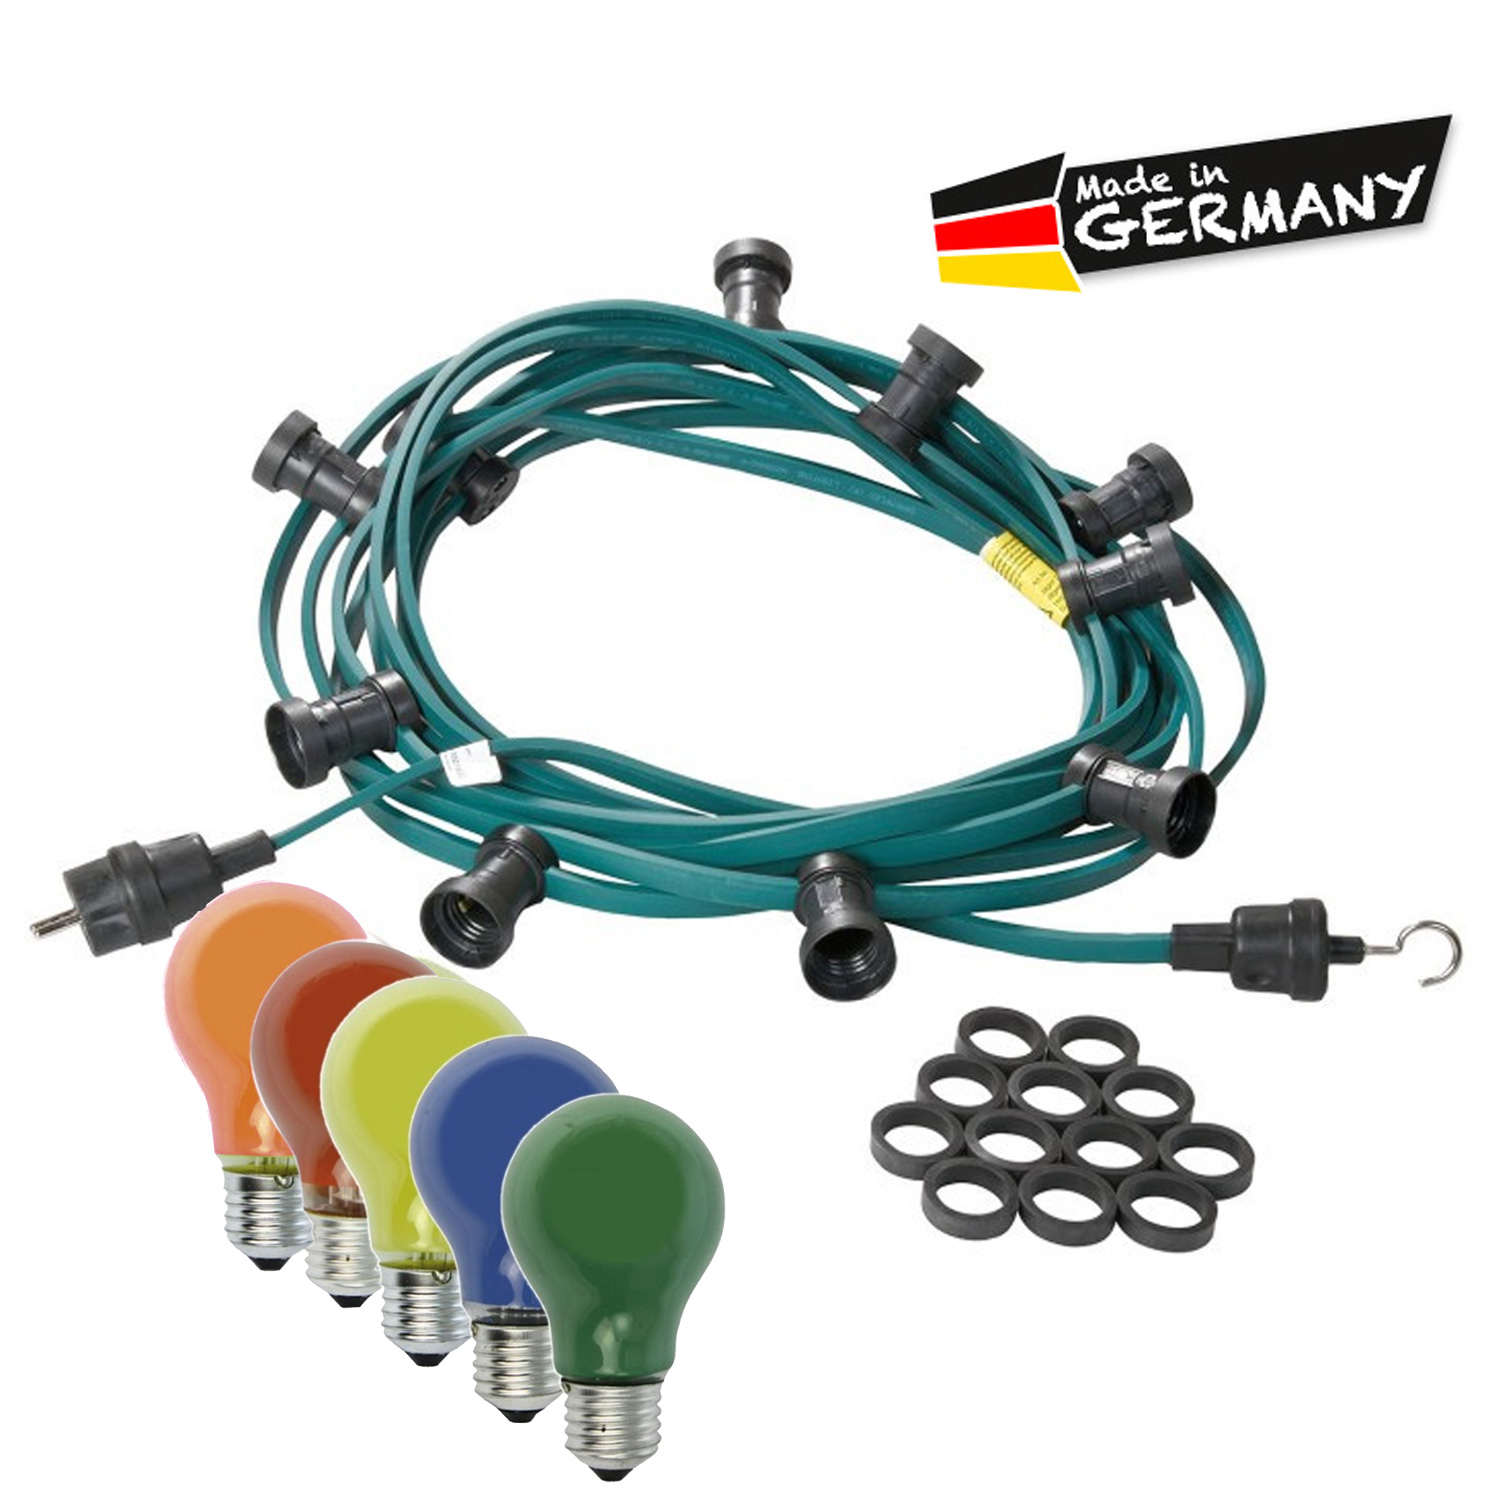 Illu-/Partylichterkette | E27-Fassungen | Made in Germany | mit farbigen Glühlampen | 5m | 5x E27-Fassungen